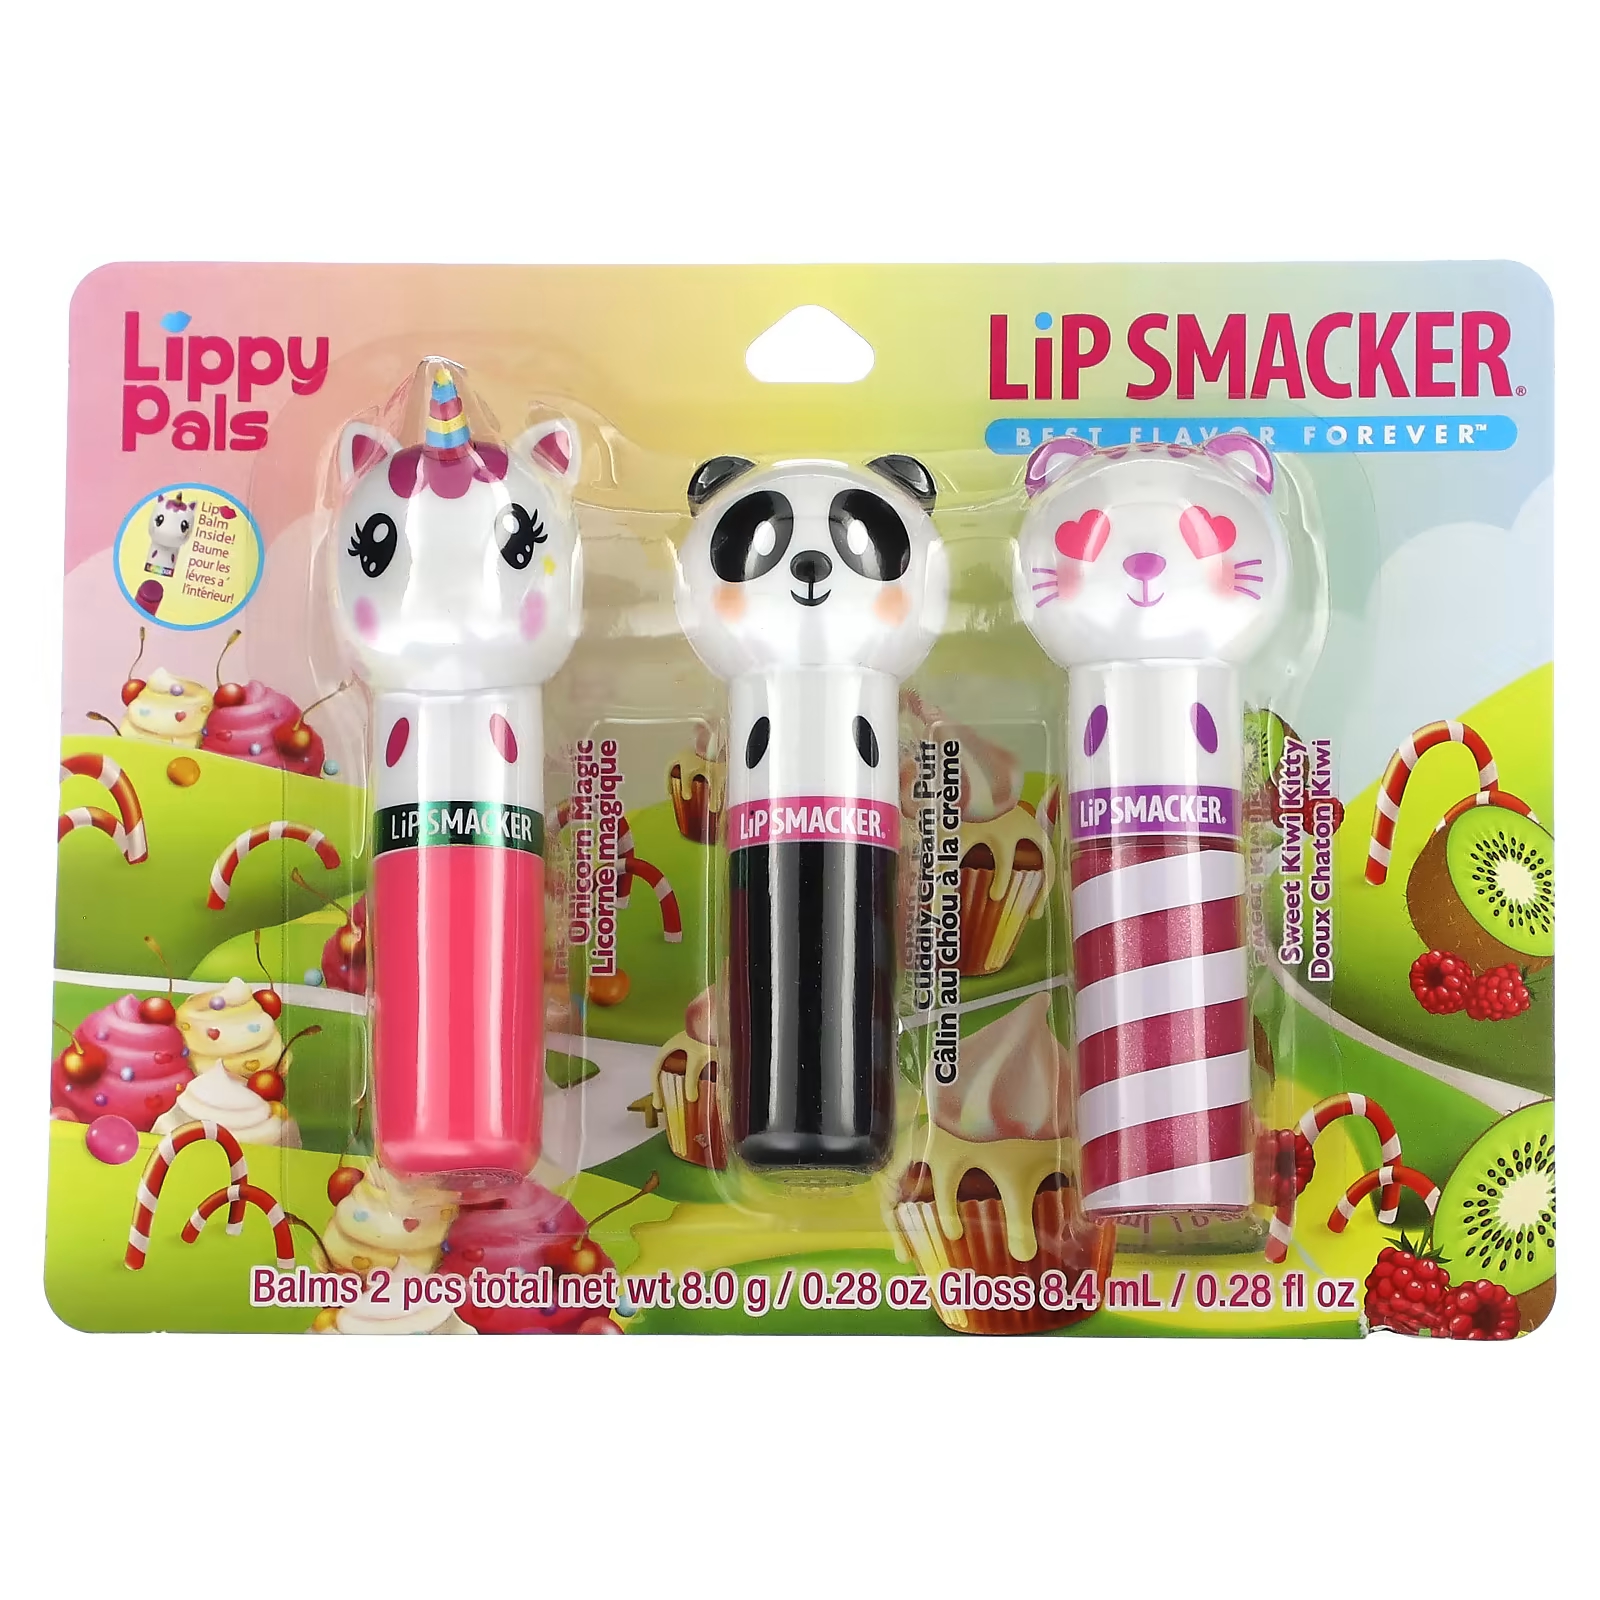 Бальзам для губ Lip Smacker Lippy Pals, 3 шт 16.4 г neutrogena масло для тела не содержит отдушек 8 5 ж унц 250 мл